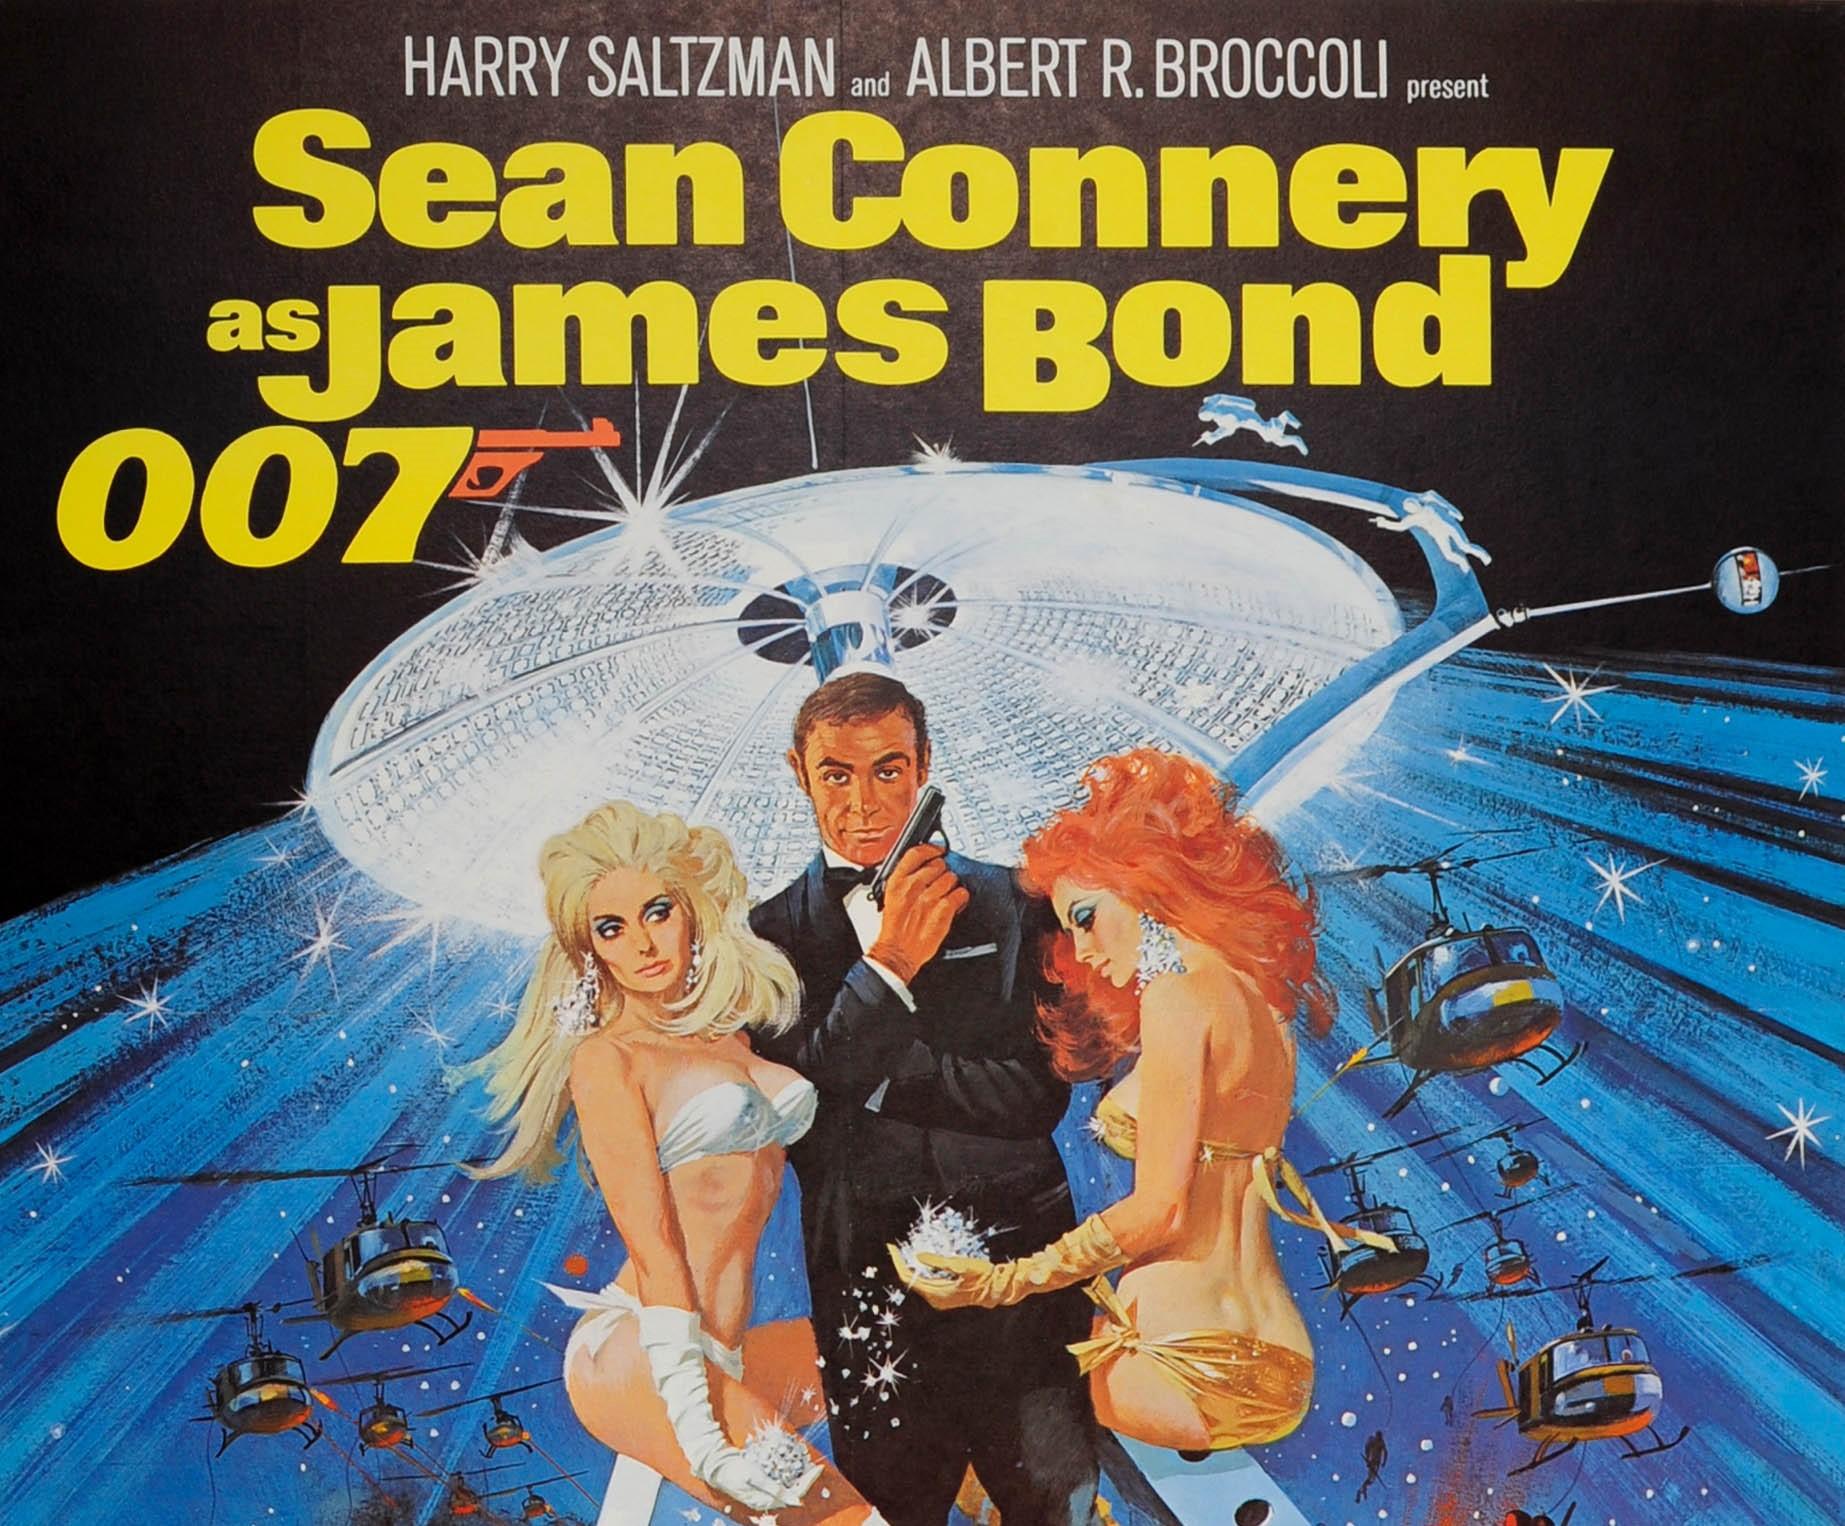 Original Vintage drei Blatt Filmplakat für den klassischen 007 Film Diamonds Are Forever mit Sean Connery als James Bond:: Jill St. John als Tiffany Case:: Charles Gray als Blofeld und Lana Wood als Plenty O'Toole. Kunstwerk des amerikanischen